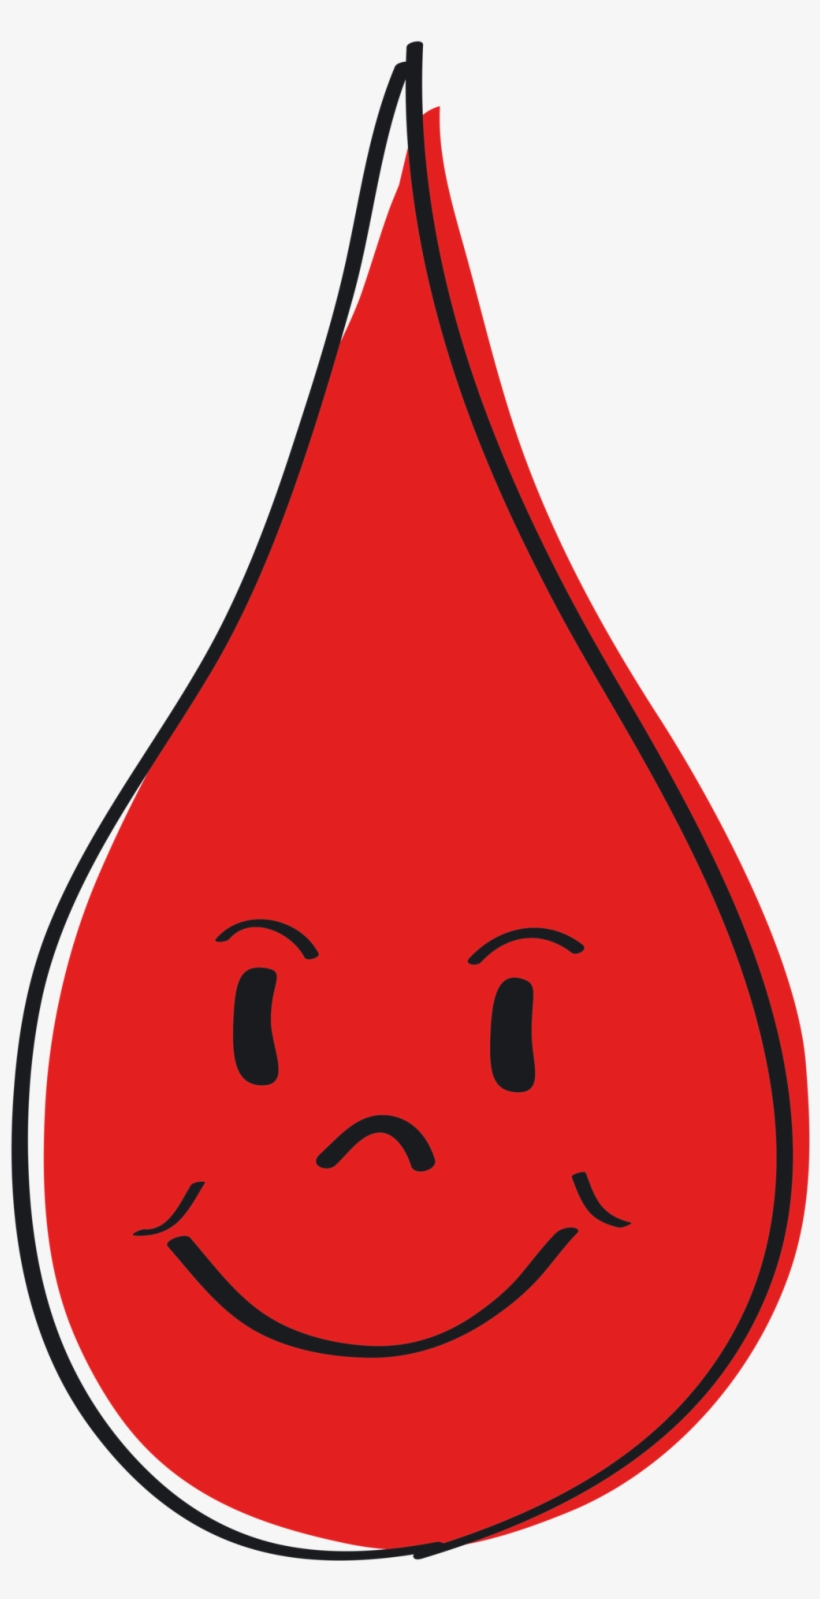 Blood Drop Red Blood Clip Art At Clker Vector Clip - Blood Drop Png Clip Art, transparent png #331099